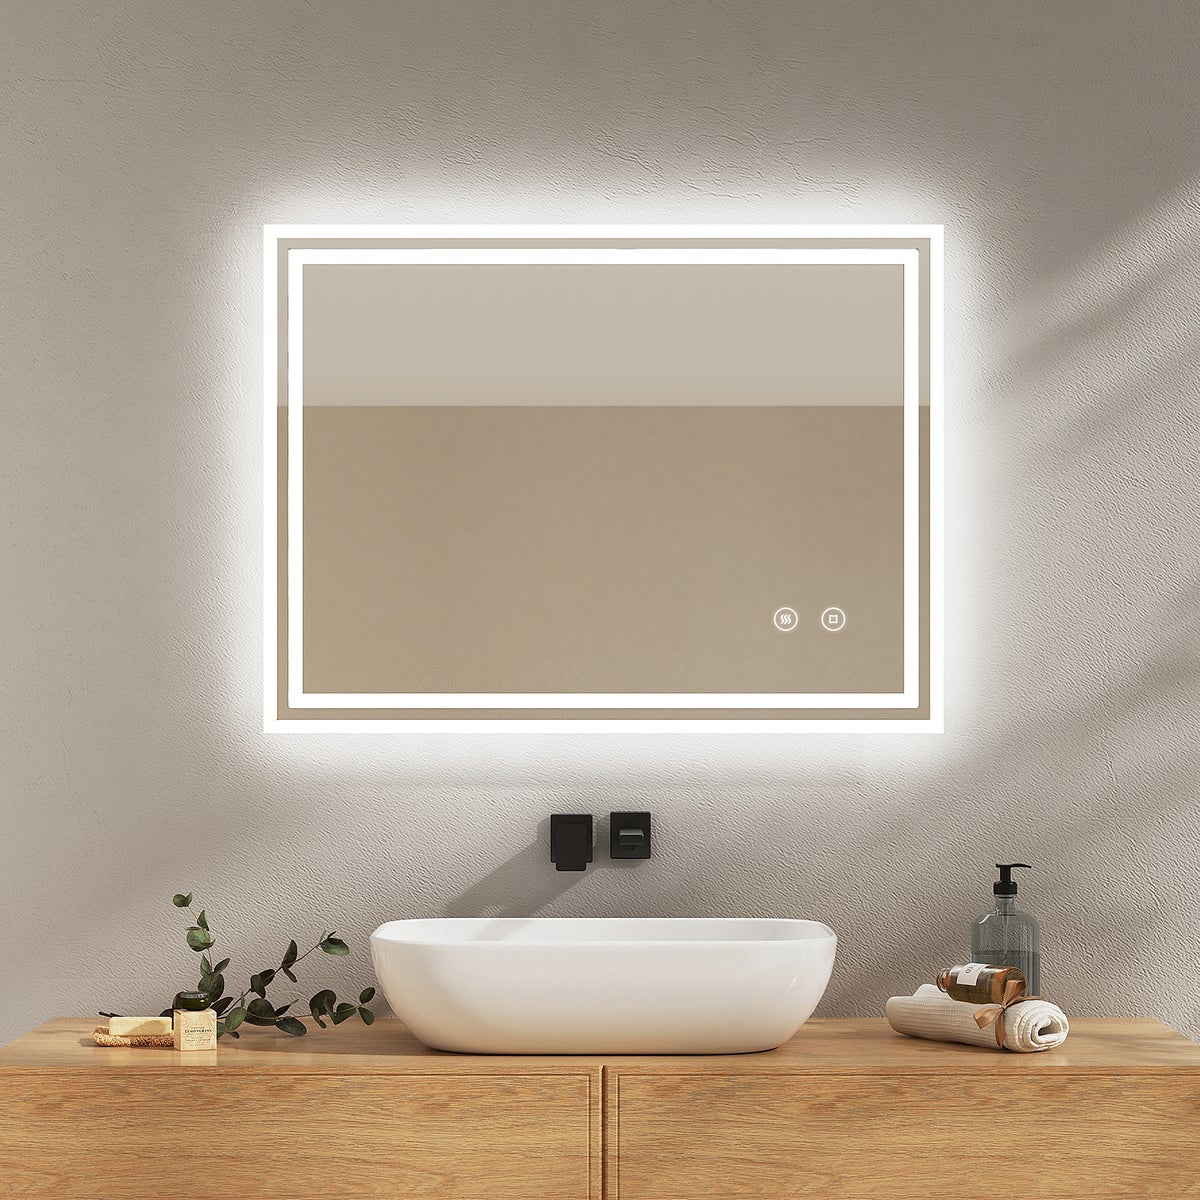 EMKE Badspiegel mit Touch 6500K LED-Beleuchtung eckig, Beschlagfrei, Helligkeit Einstellbar, Memory-Funktion, Horizontal&Vertical 80 x 60 cm